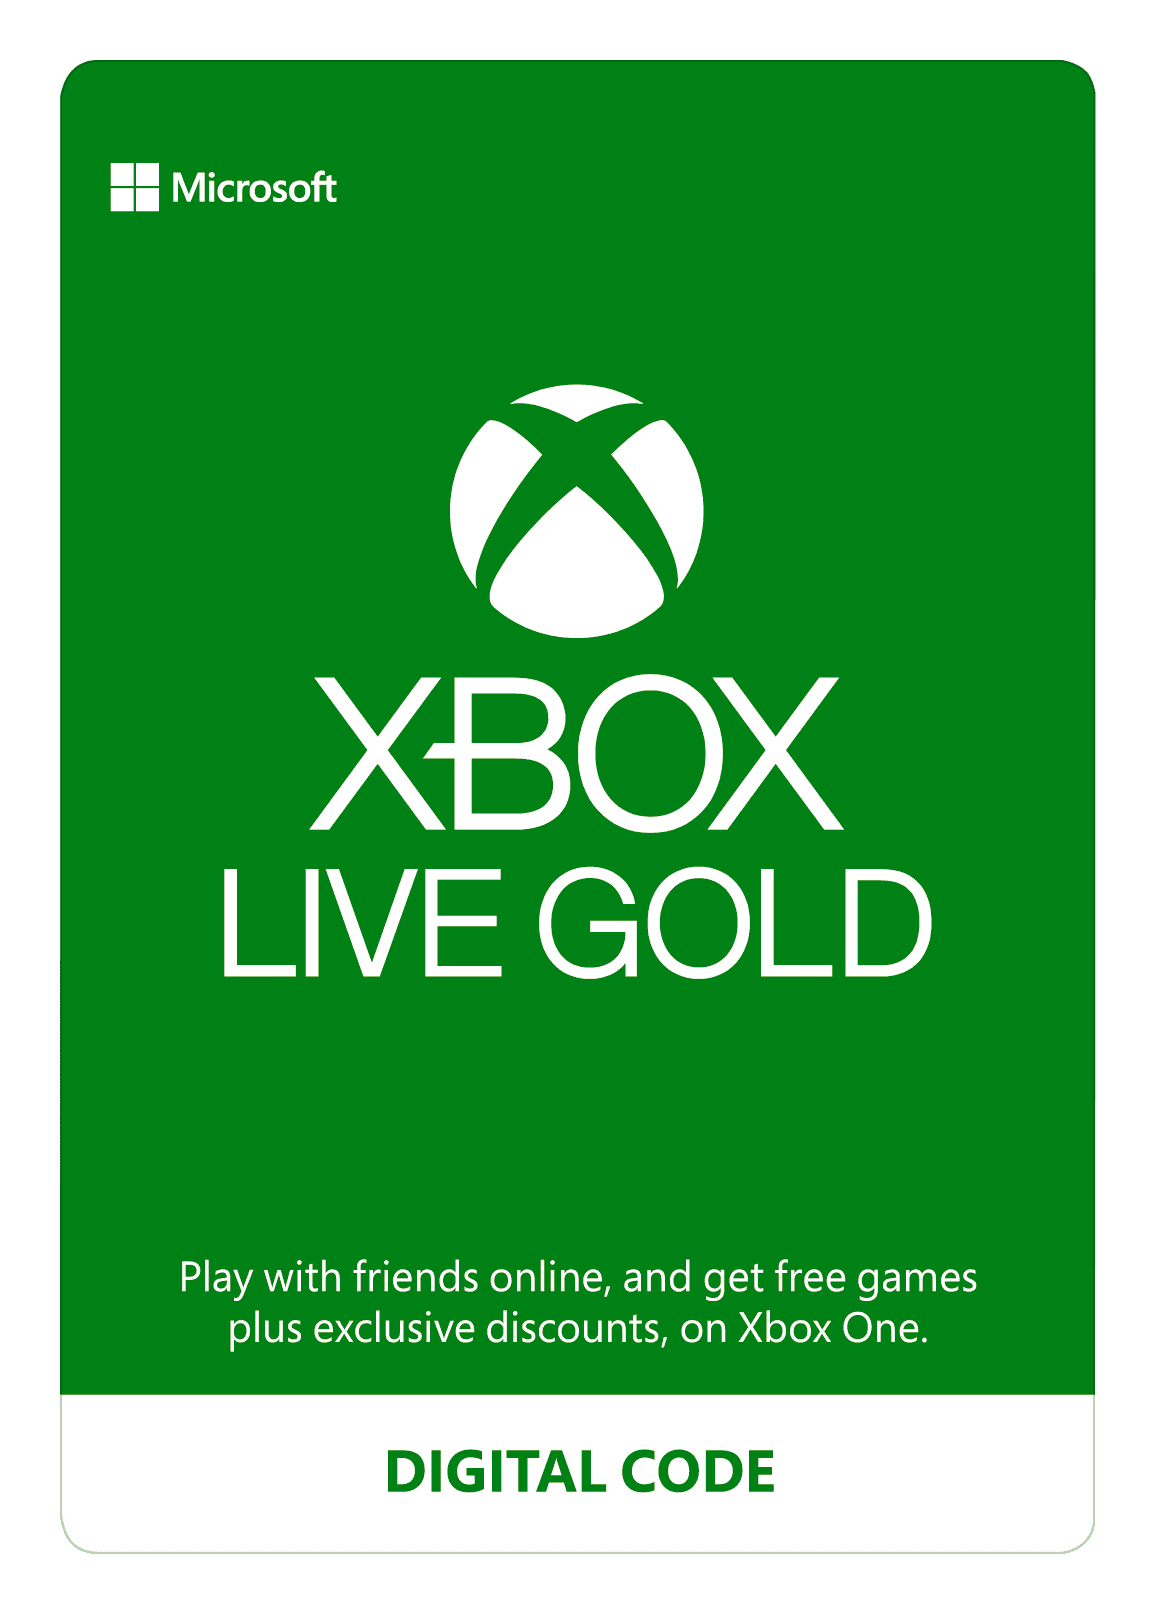 Aannames, aannames. Raad eens genezen slagader Xbox Live 12 Month Gold Membership, Microsoft, [Digital Download] -  Walmart.com